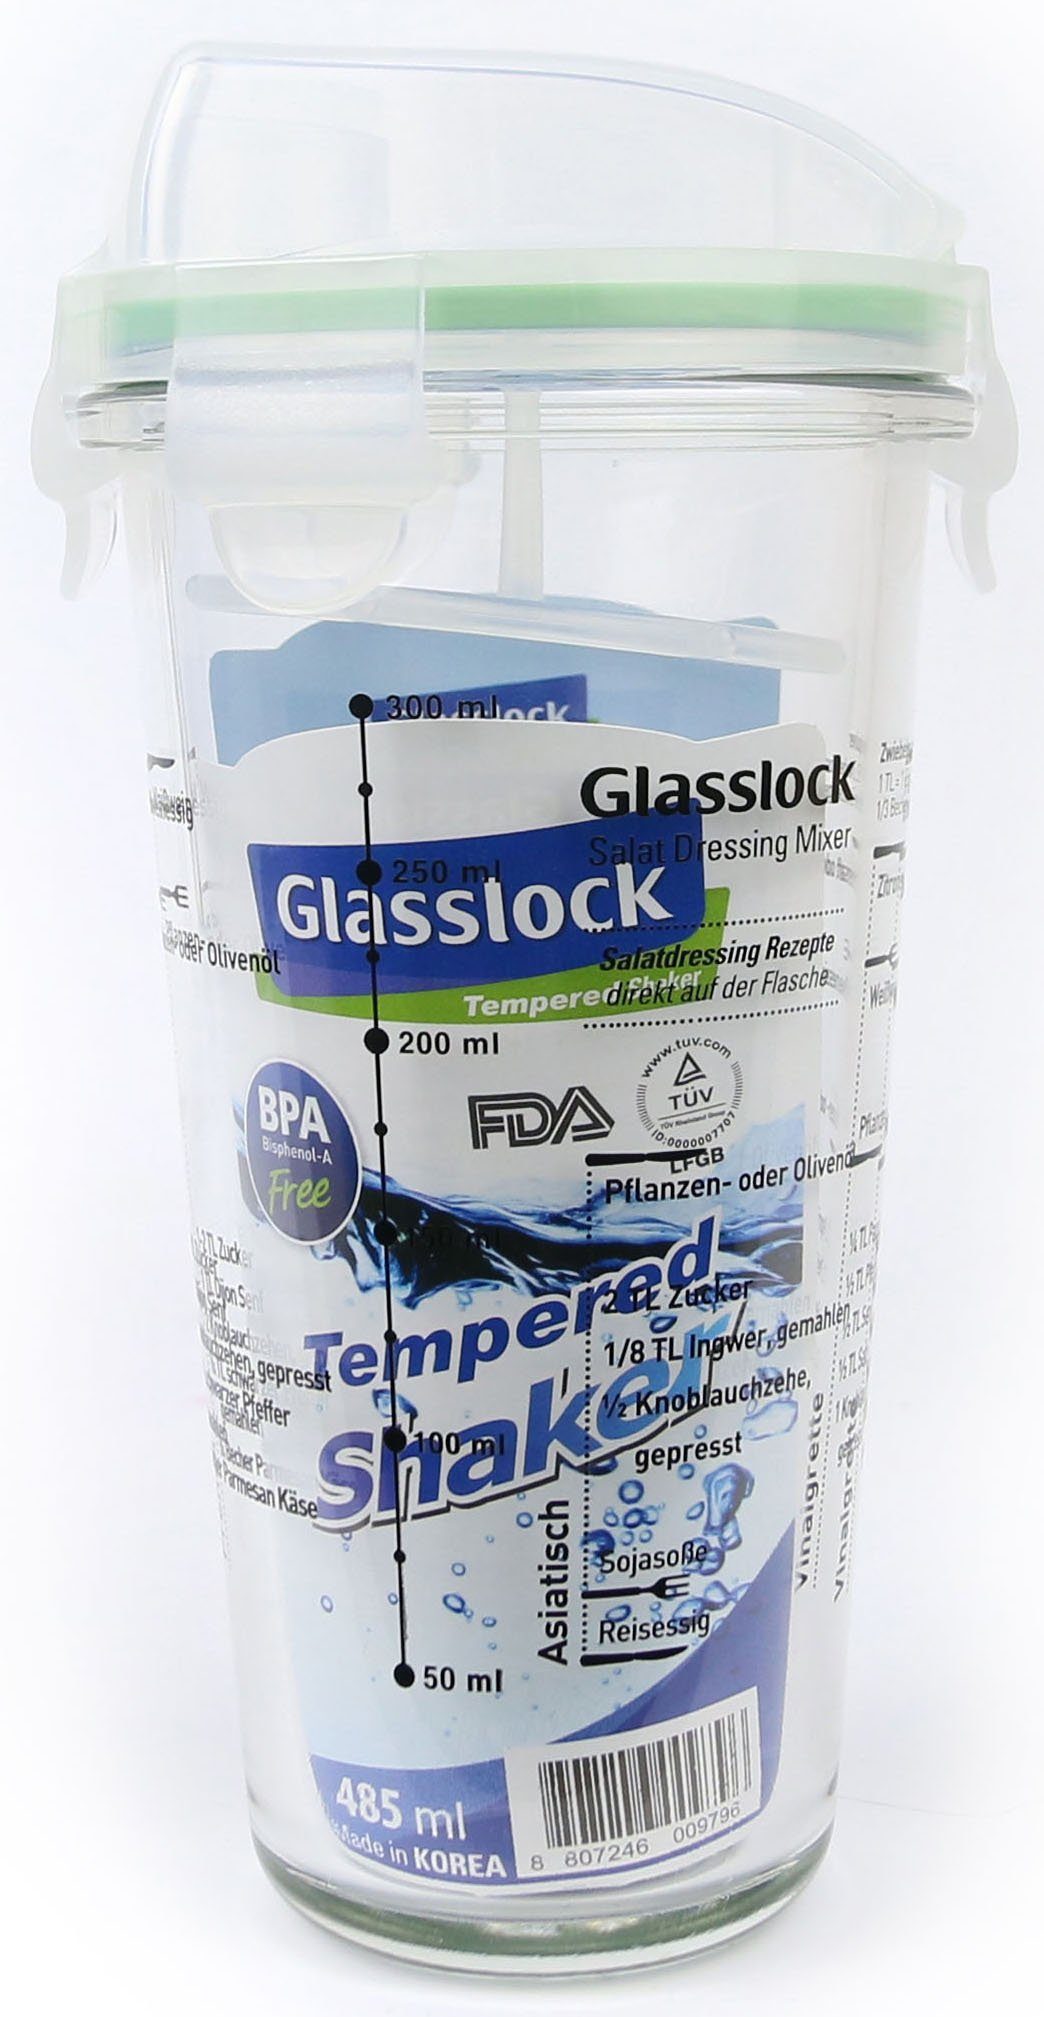 Glasslock Dressing Shaker, 450 ml Glas, Shaker), (Cocktail